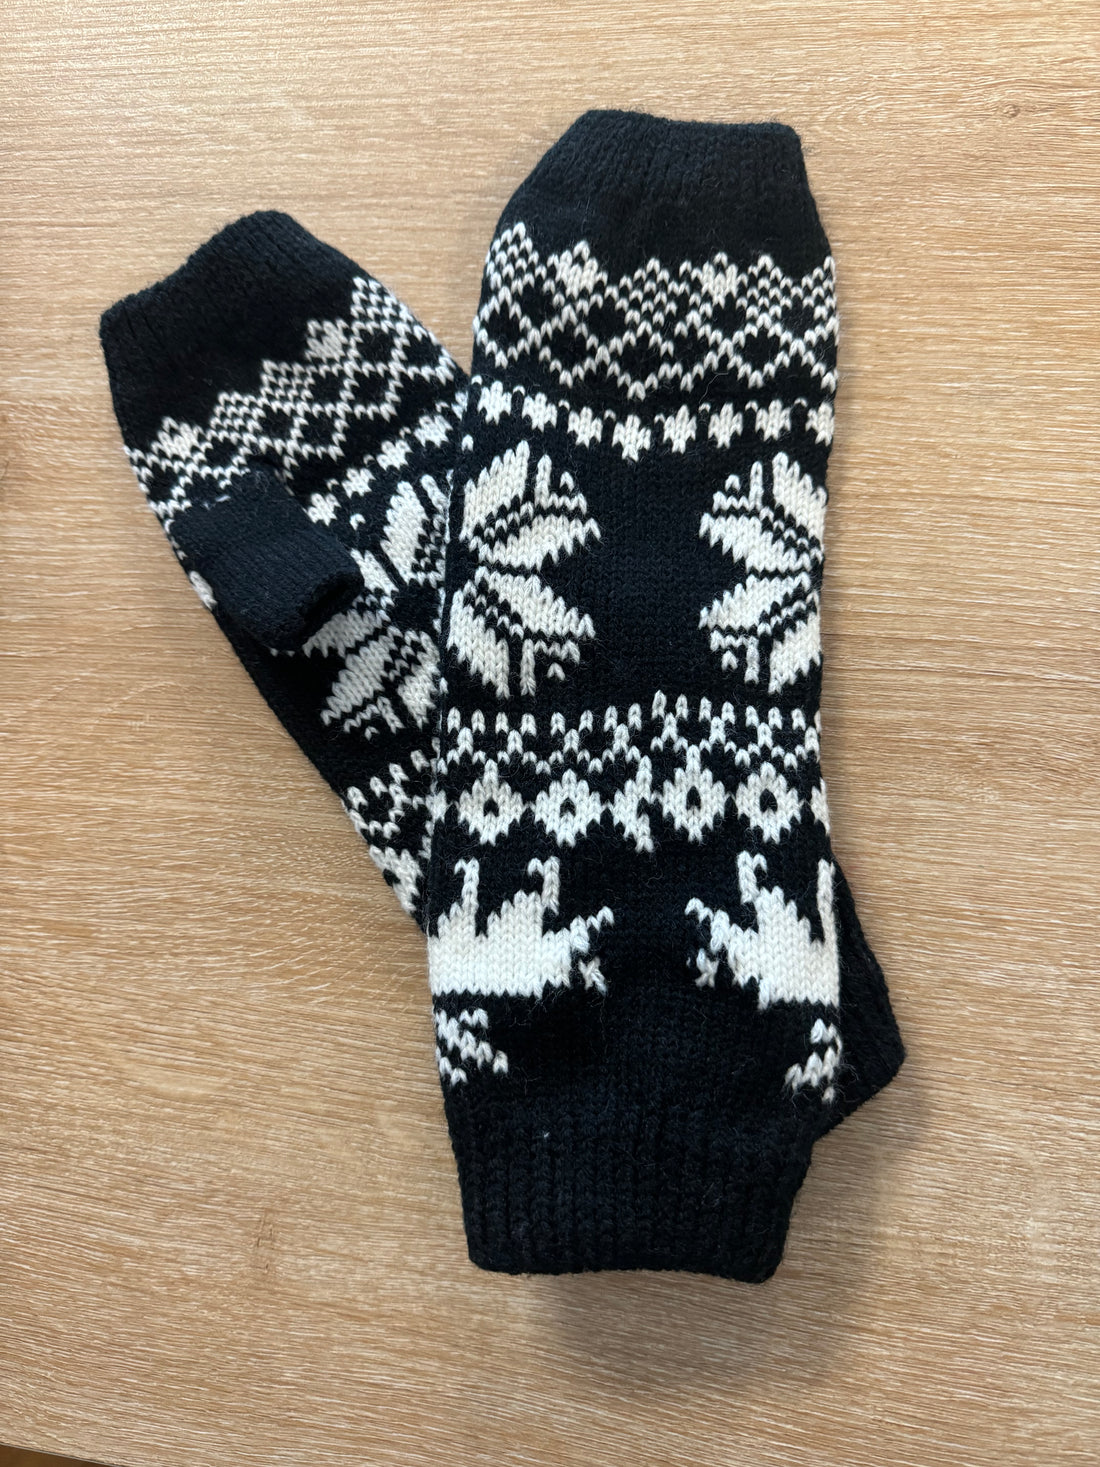 Fingerless Gloves - Black & White